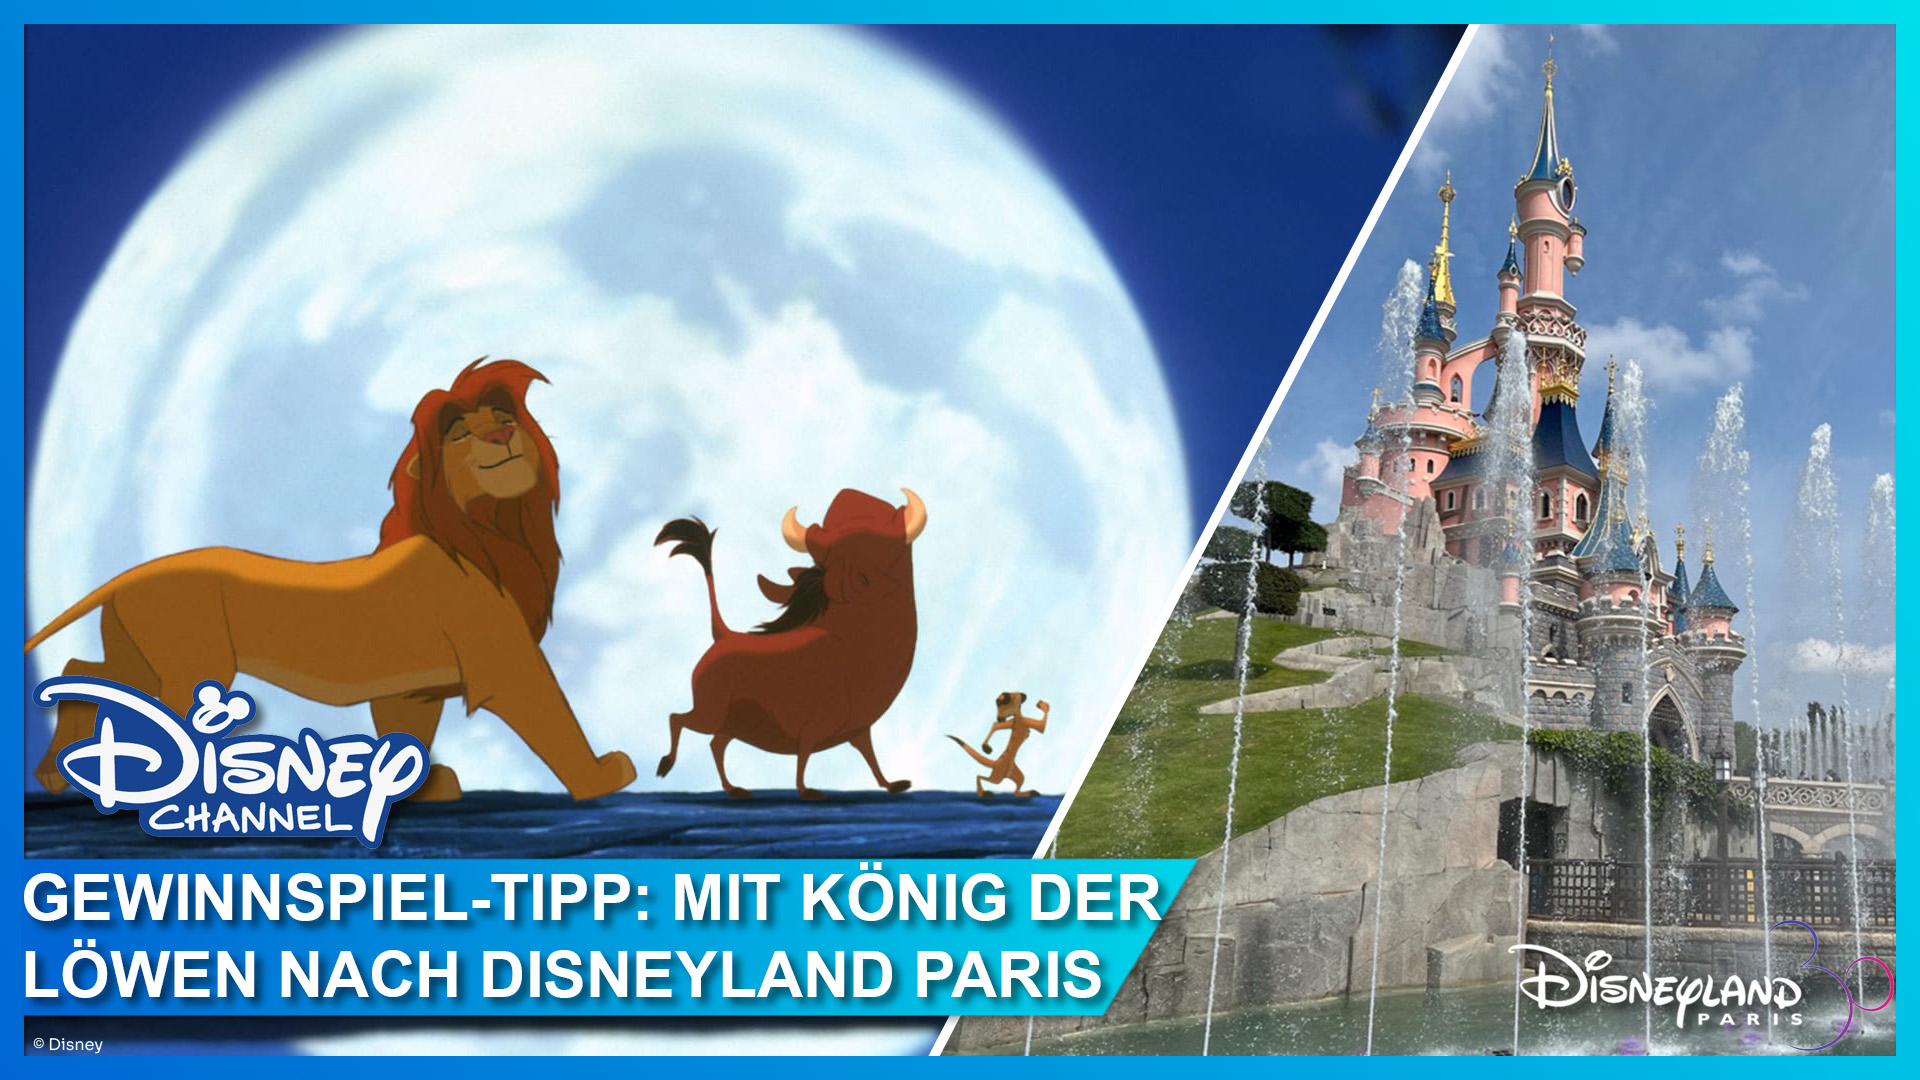 König der Löwen im Disney Channel schauen und beim Gewinnspiel Reise nach Disneyland Paris gewinnen!